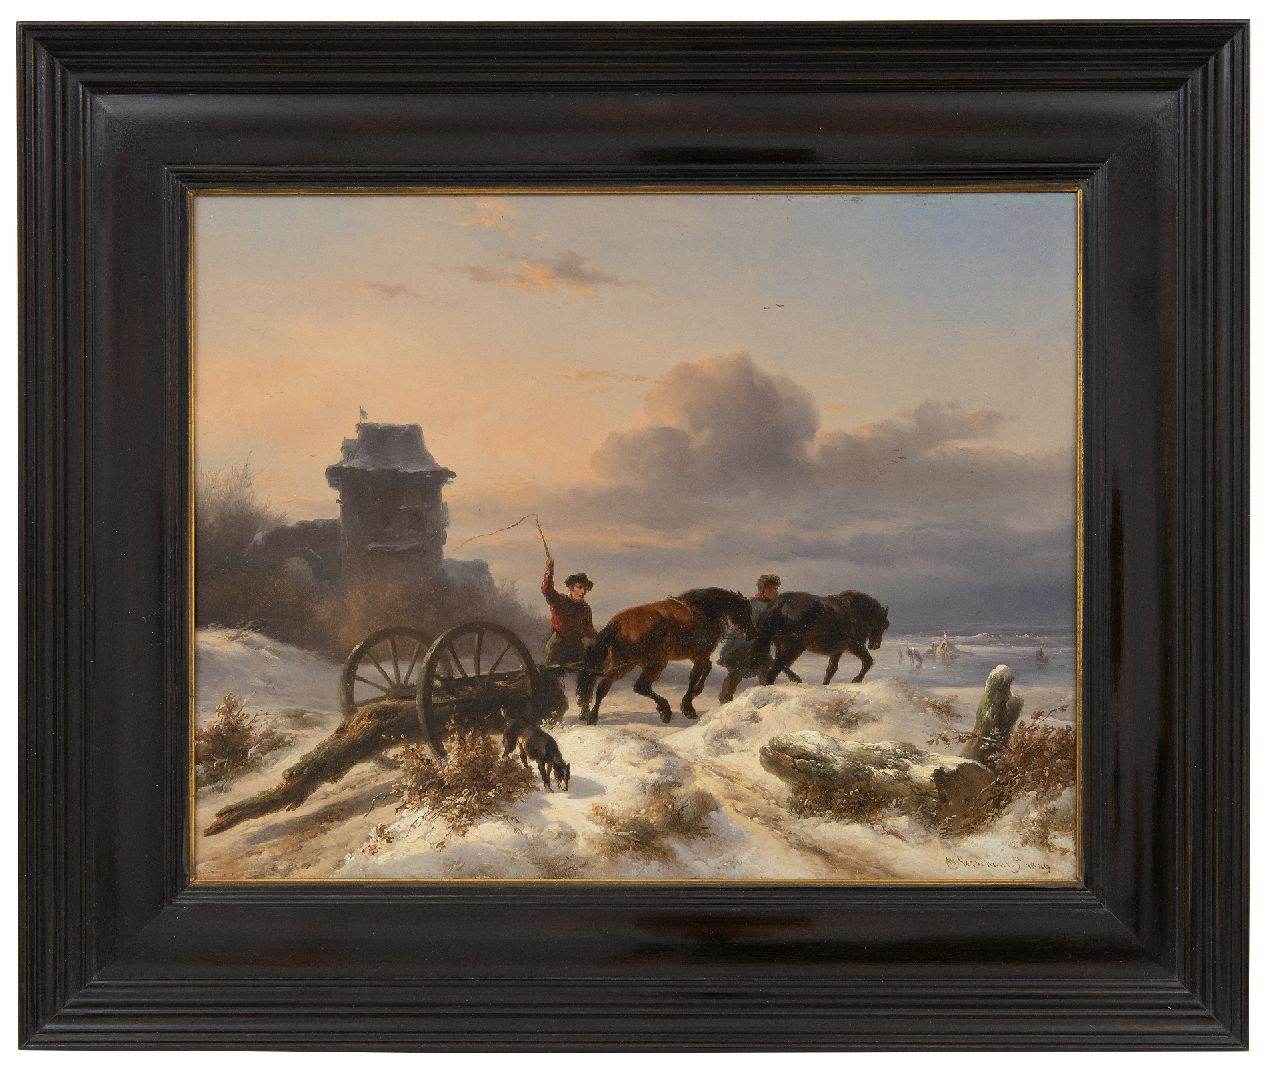 Verschuur W.  | Wouterus Verschuur | Schilderijen te koop aangeboden | Voermannen met mallejan in een winterlandschap, olieverf op paneel 27,2 x 35,0 cm, gesigneerd rechtsonder en gedateerd 1849